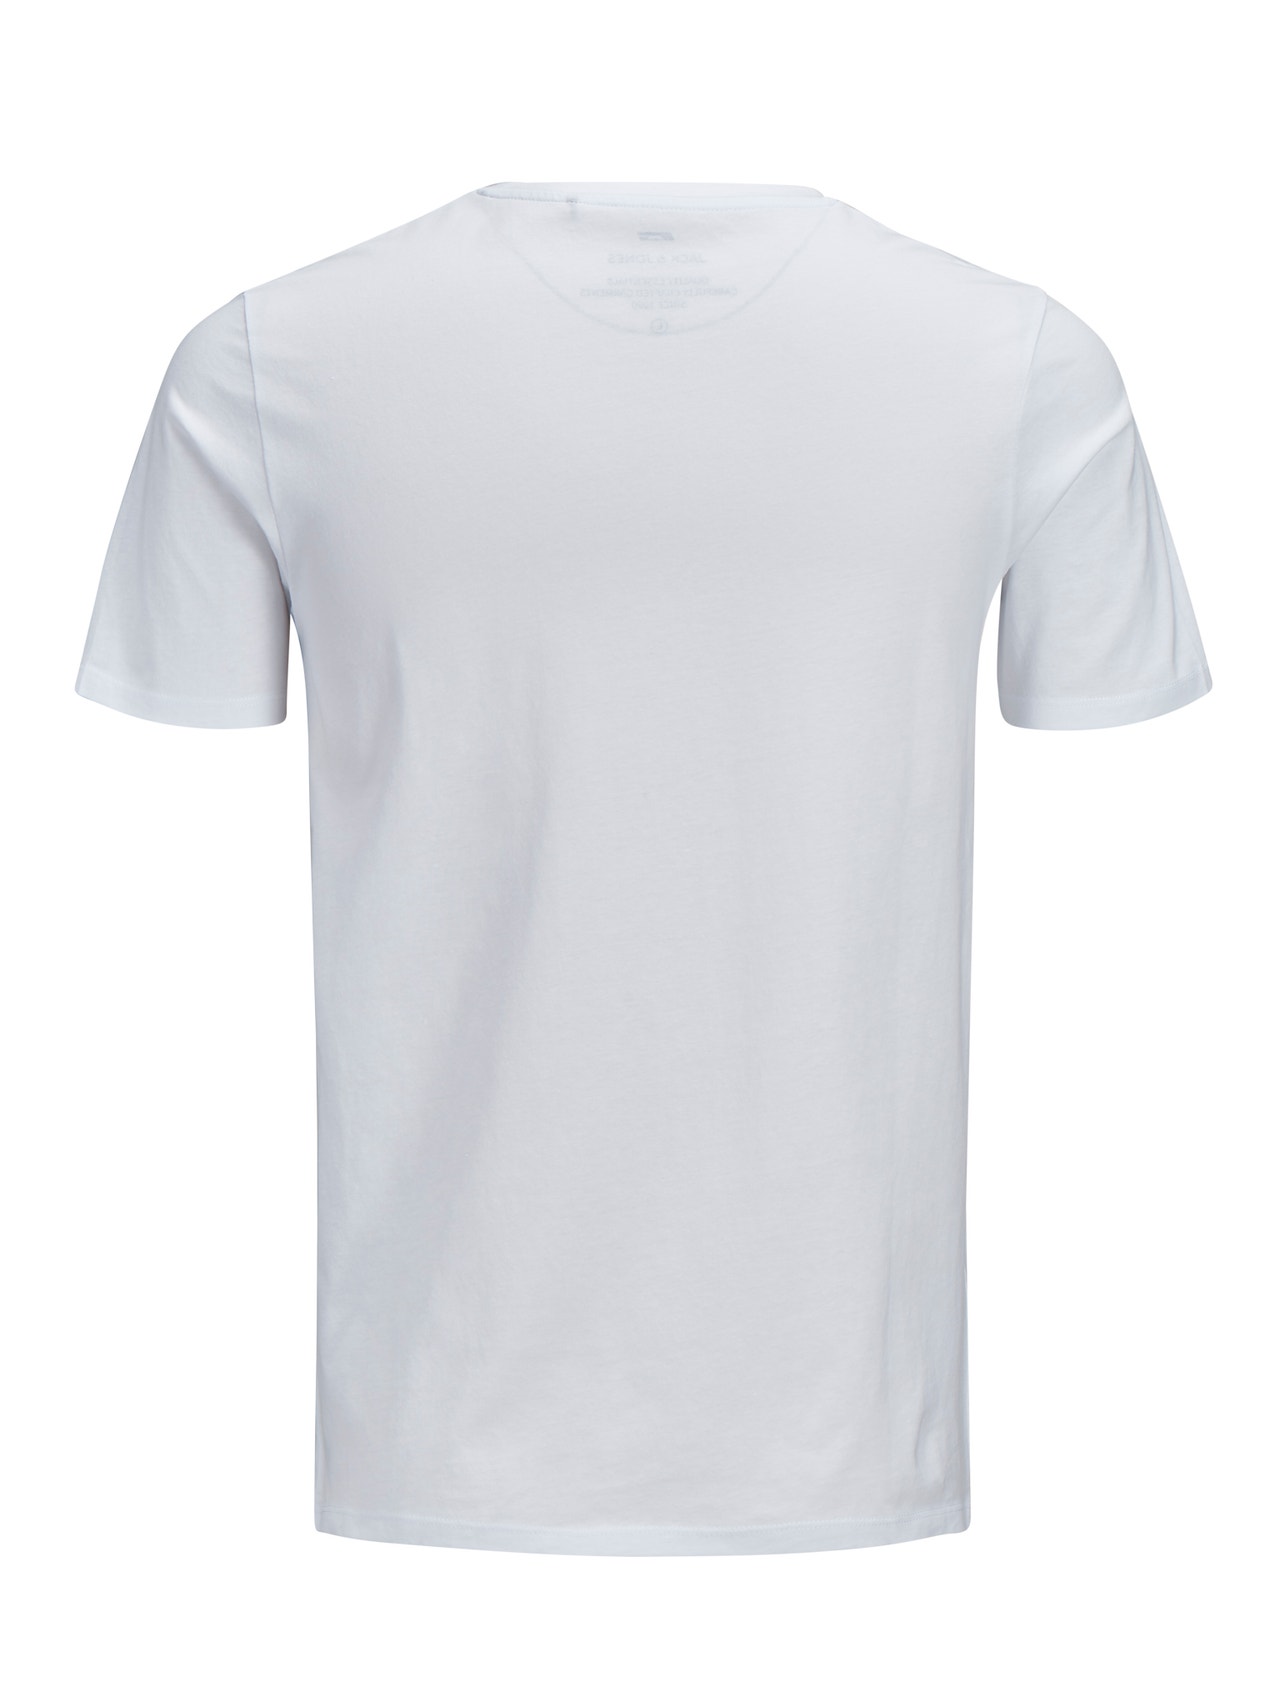 Jack & Jones Plus Size Z logo T-shirt -White - 12184987